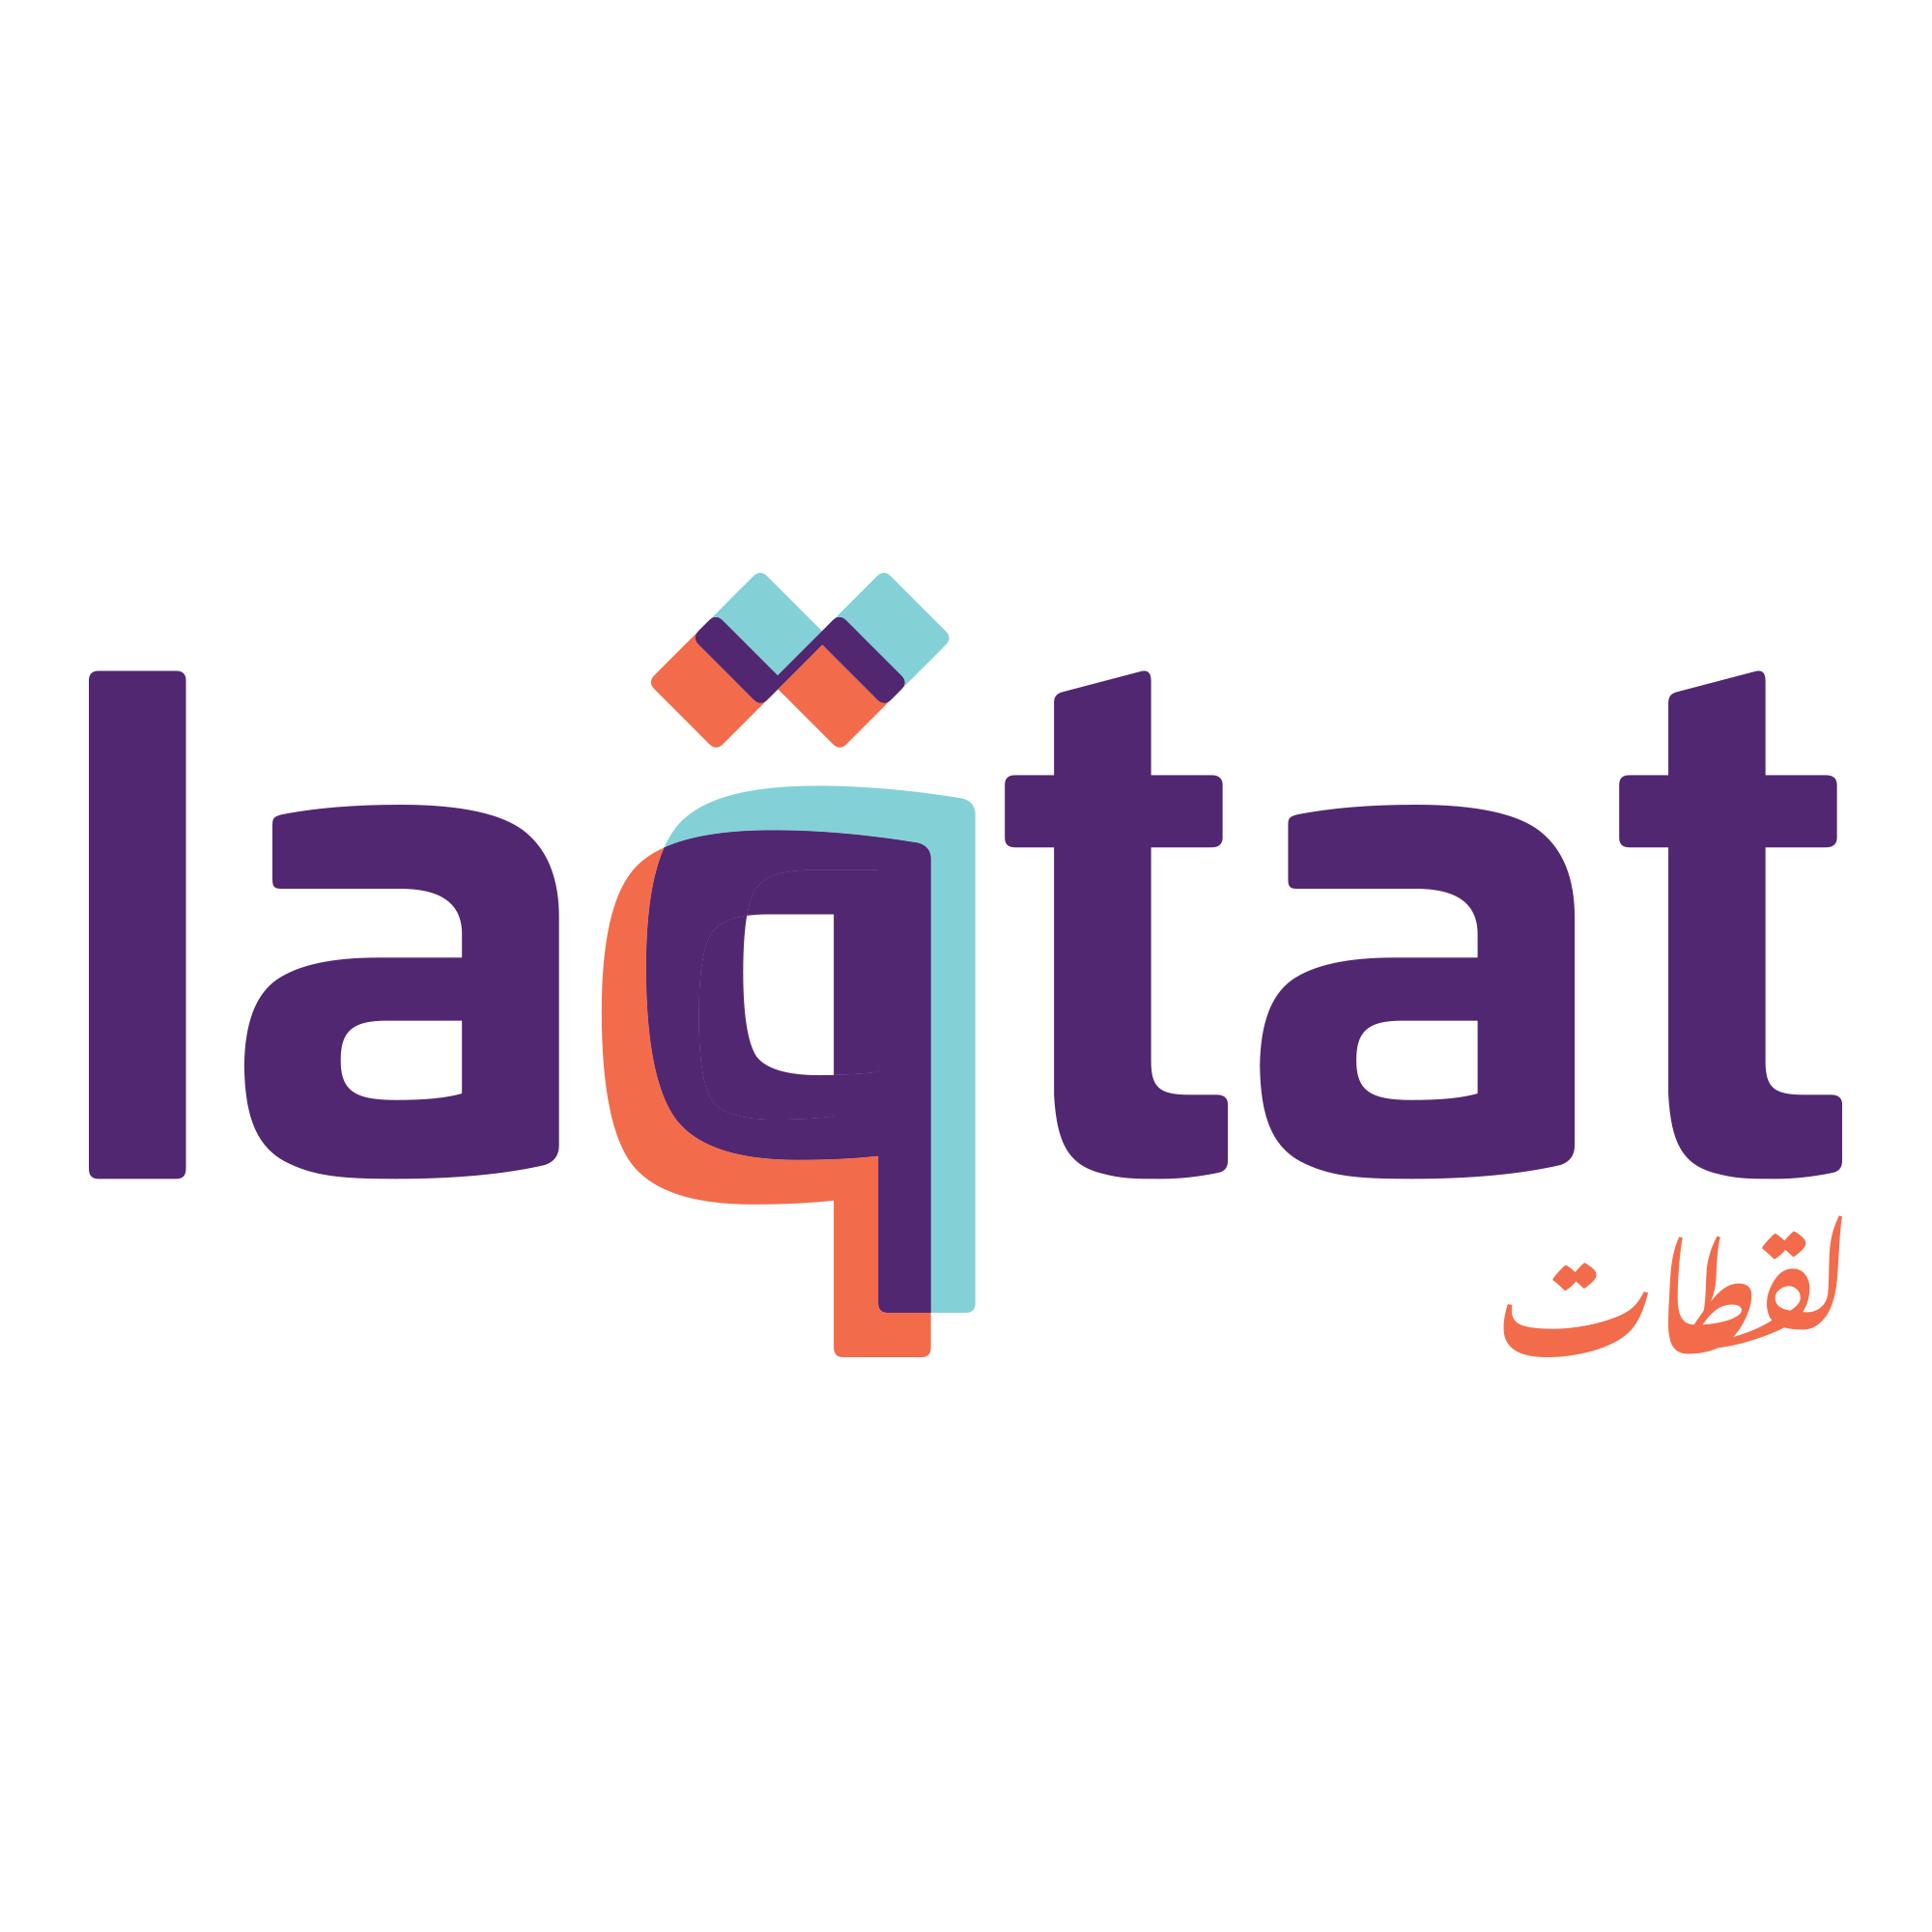 Laqtat Logo